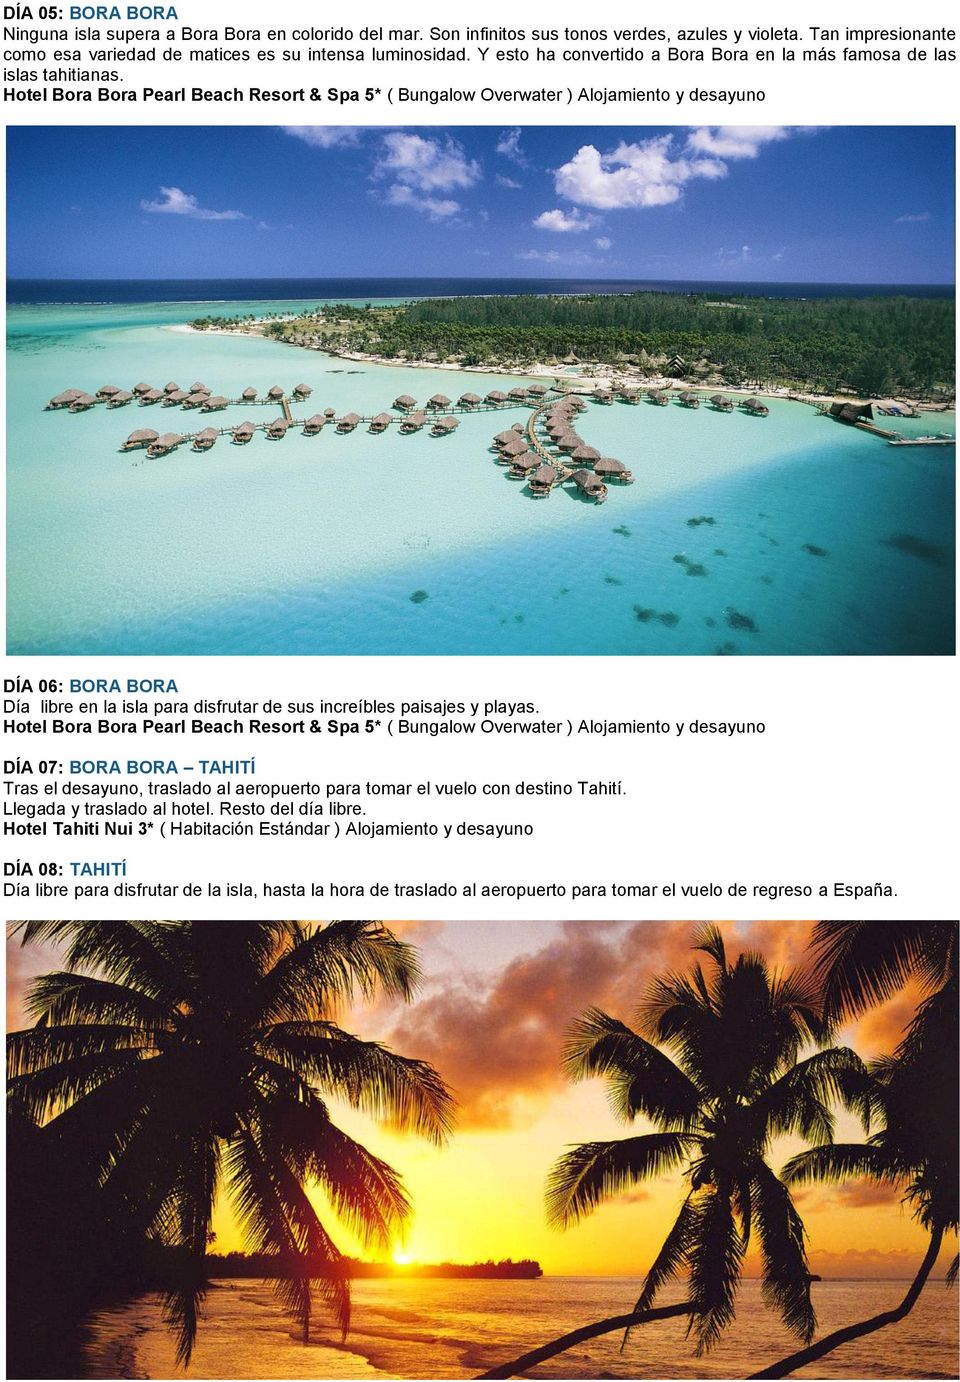 Hotel Bora Bora Pearl Beach Resort & Spa 5* ( Bungalow Overwater ) Alojamiento y desayuno DÍA 06: BORA BORA Día libre en la isla para disfrutar de sus increíbles paisajes y playas.